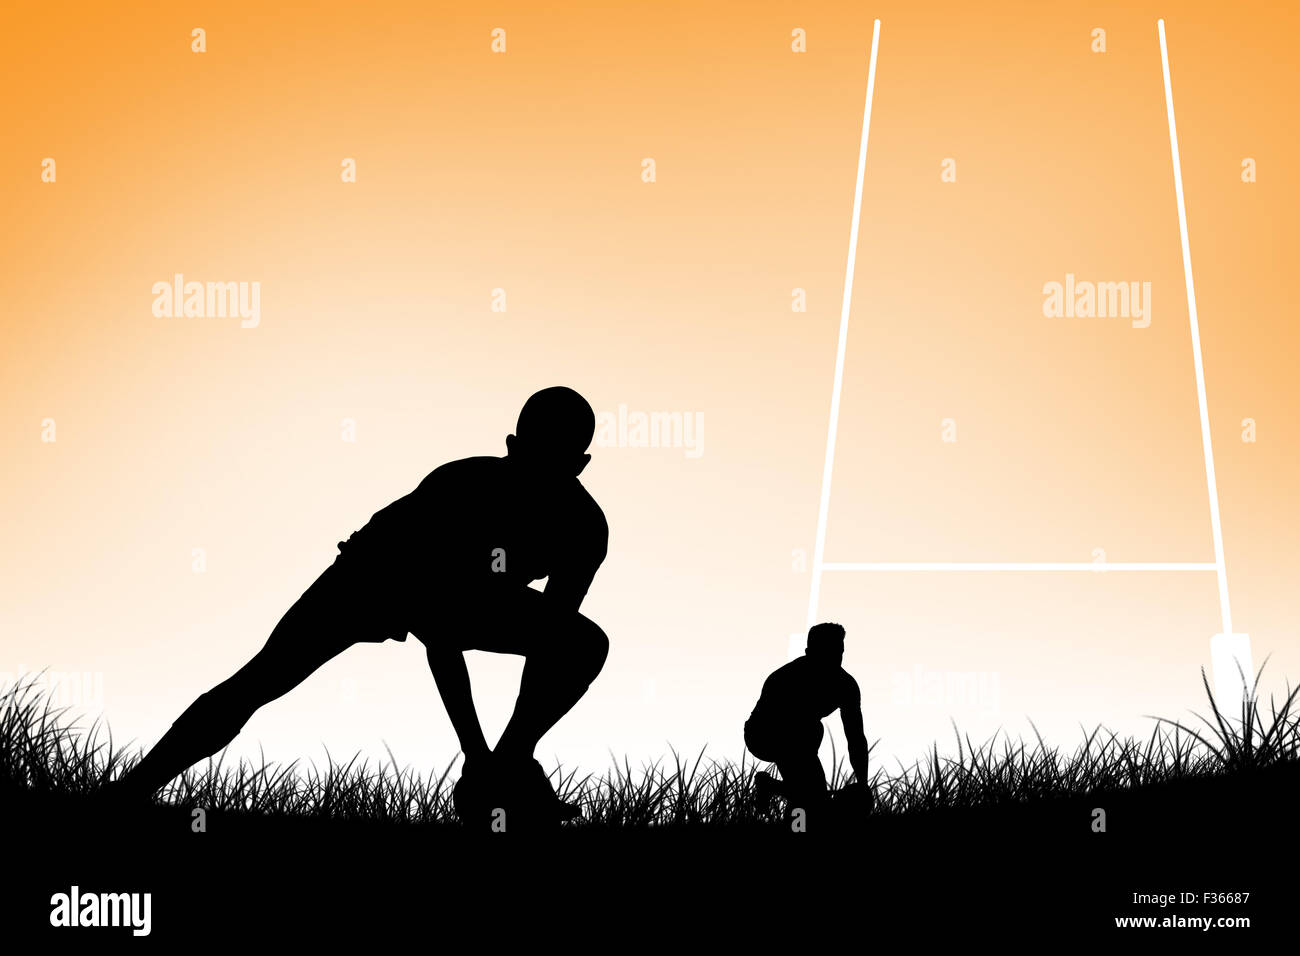 Imagen compuesta de jugador de rugby preparándose a patear el balón Foto de stock